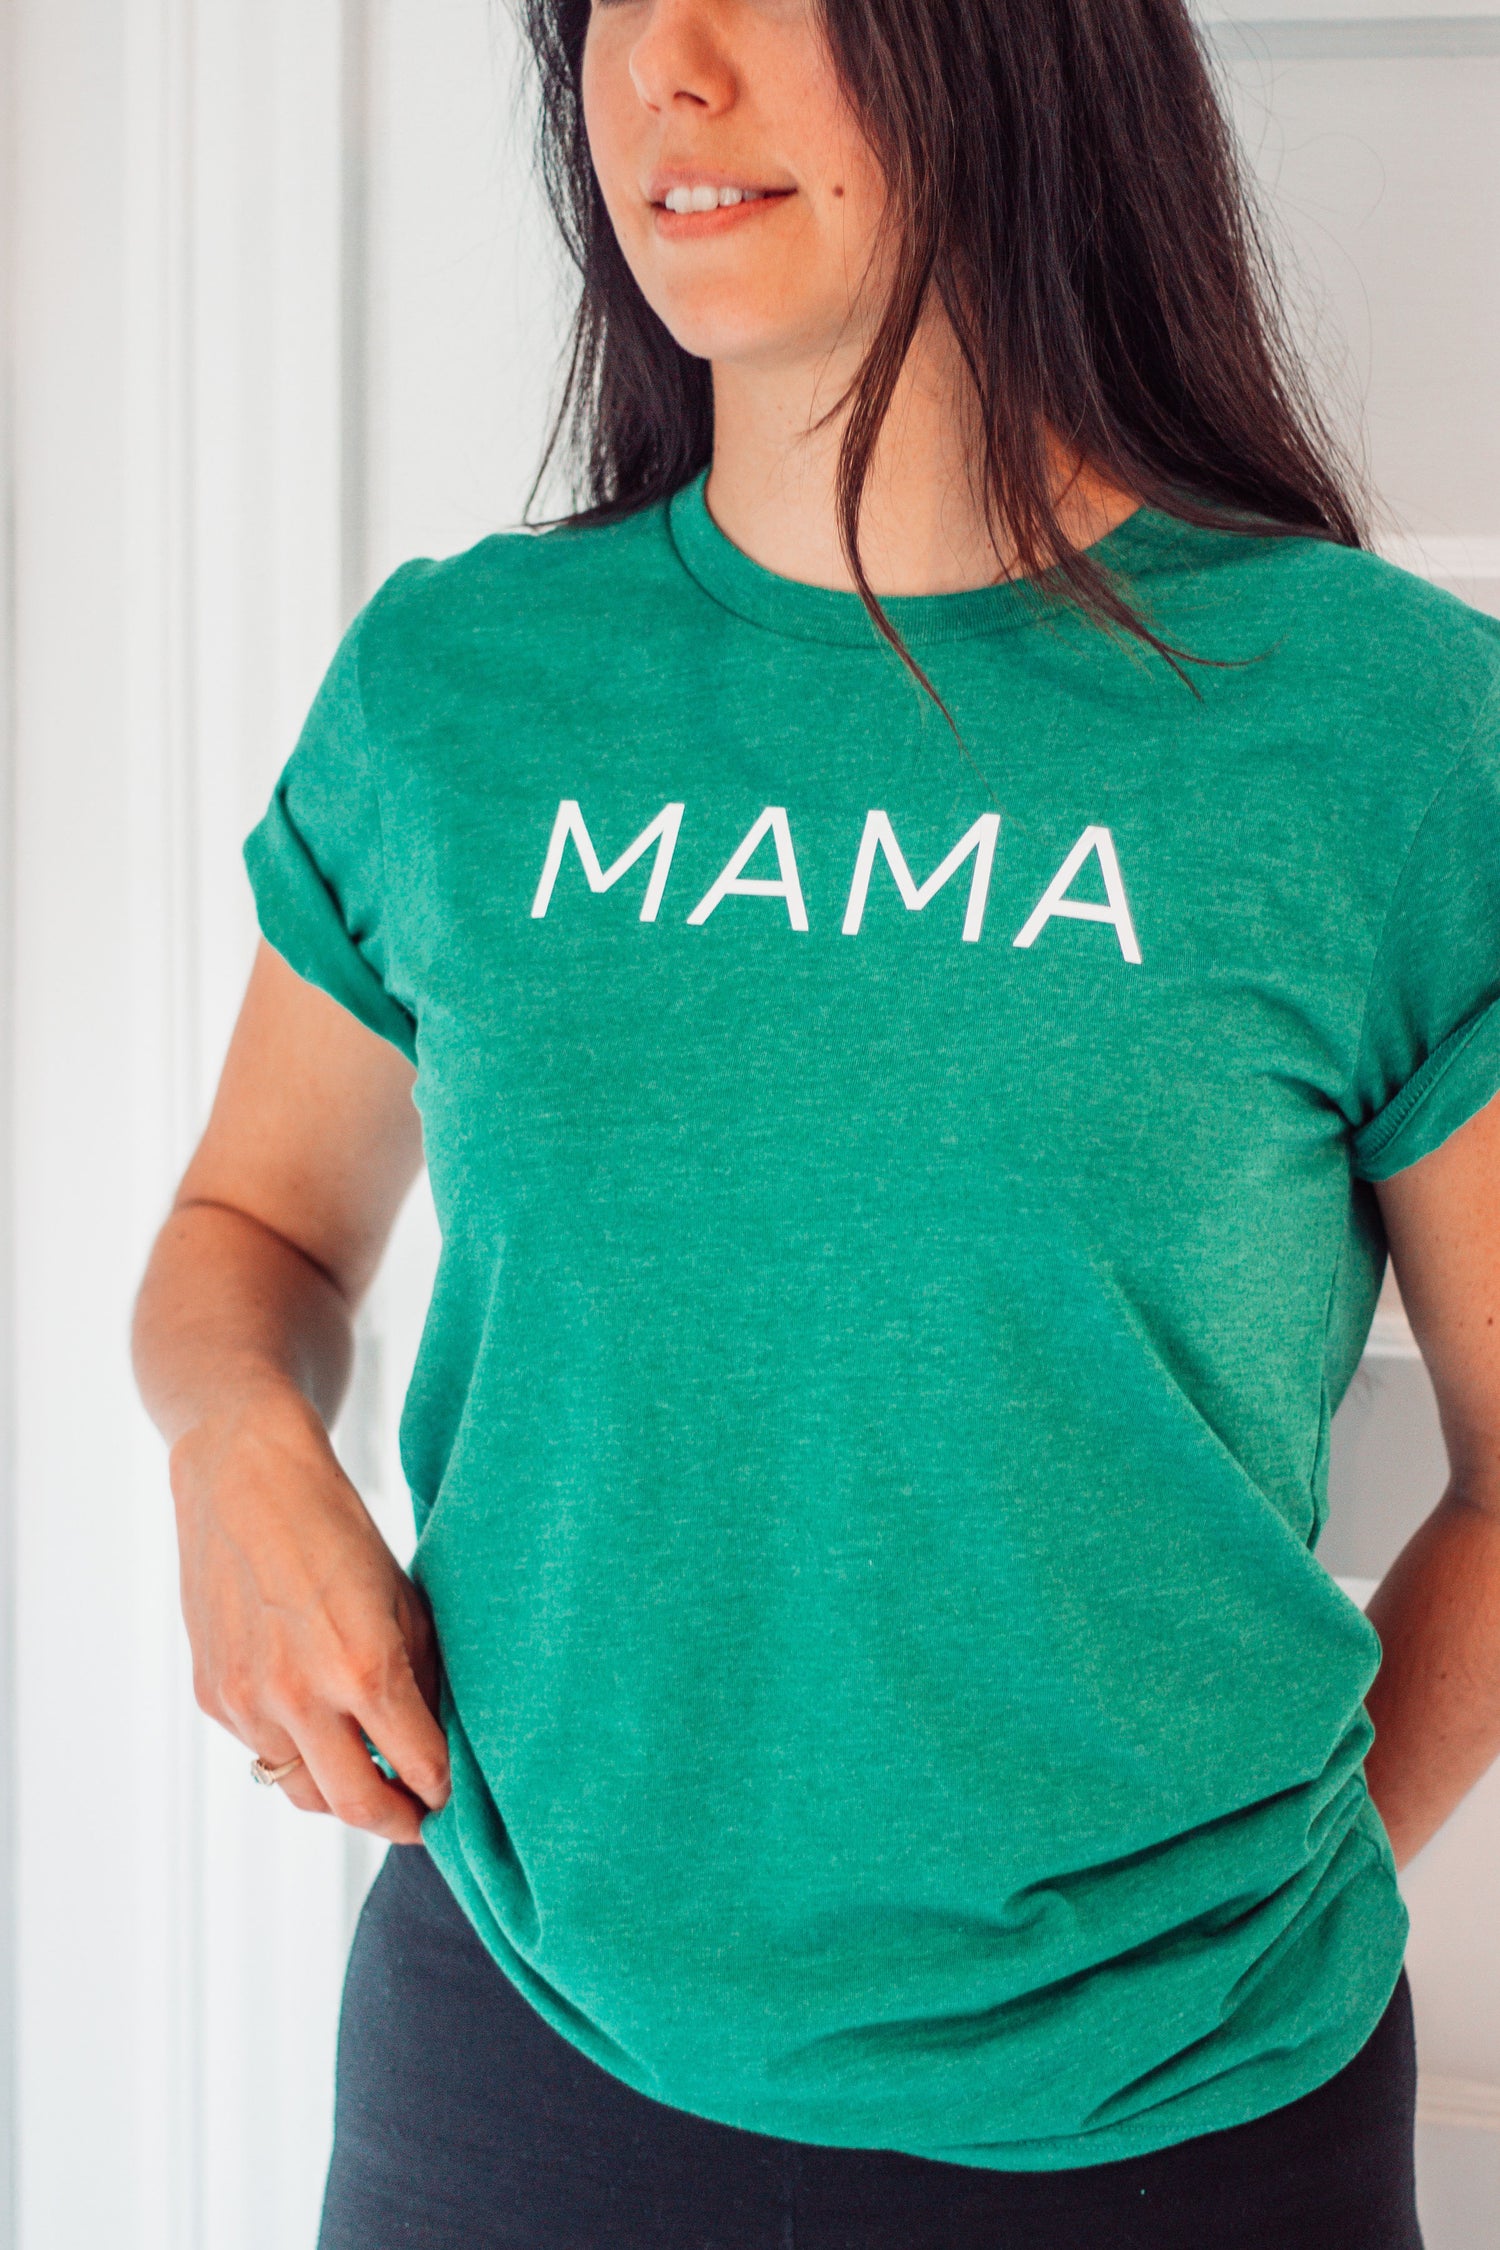 Mama Tshirts